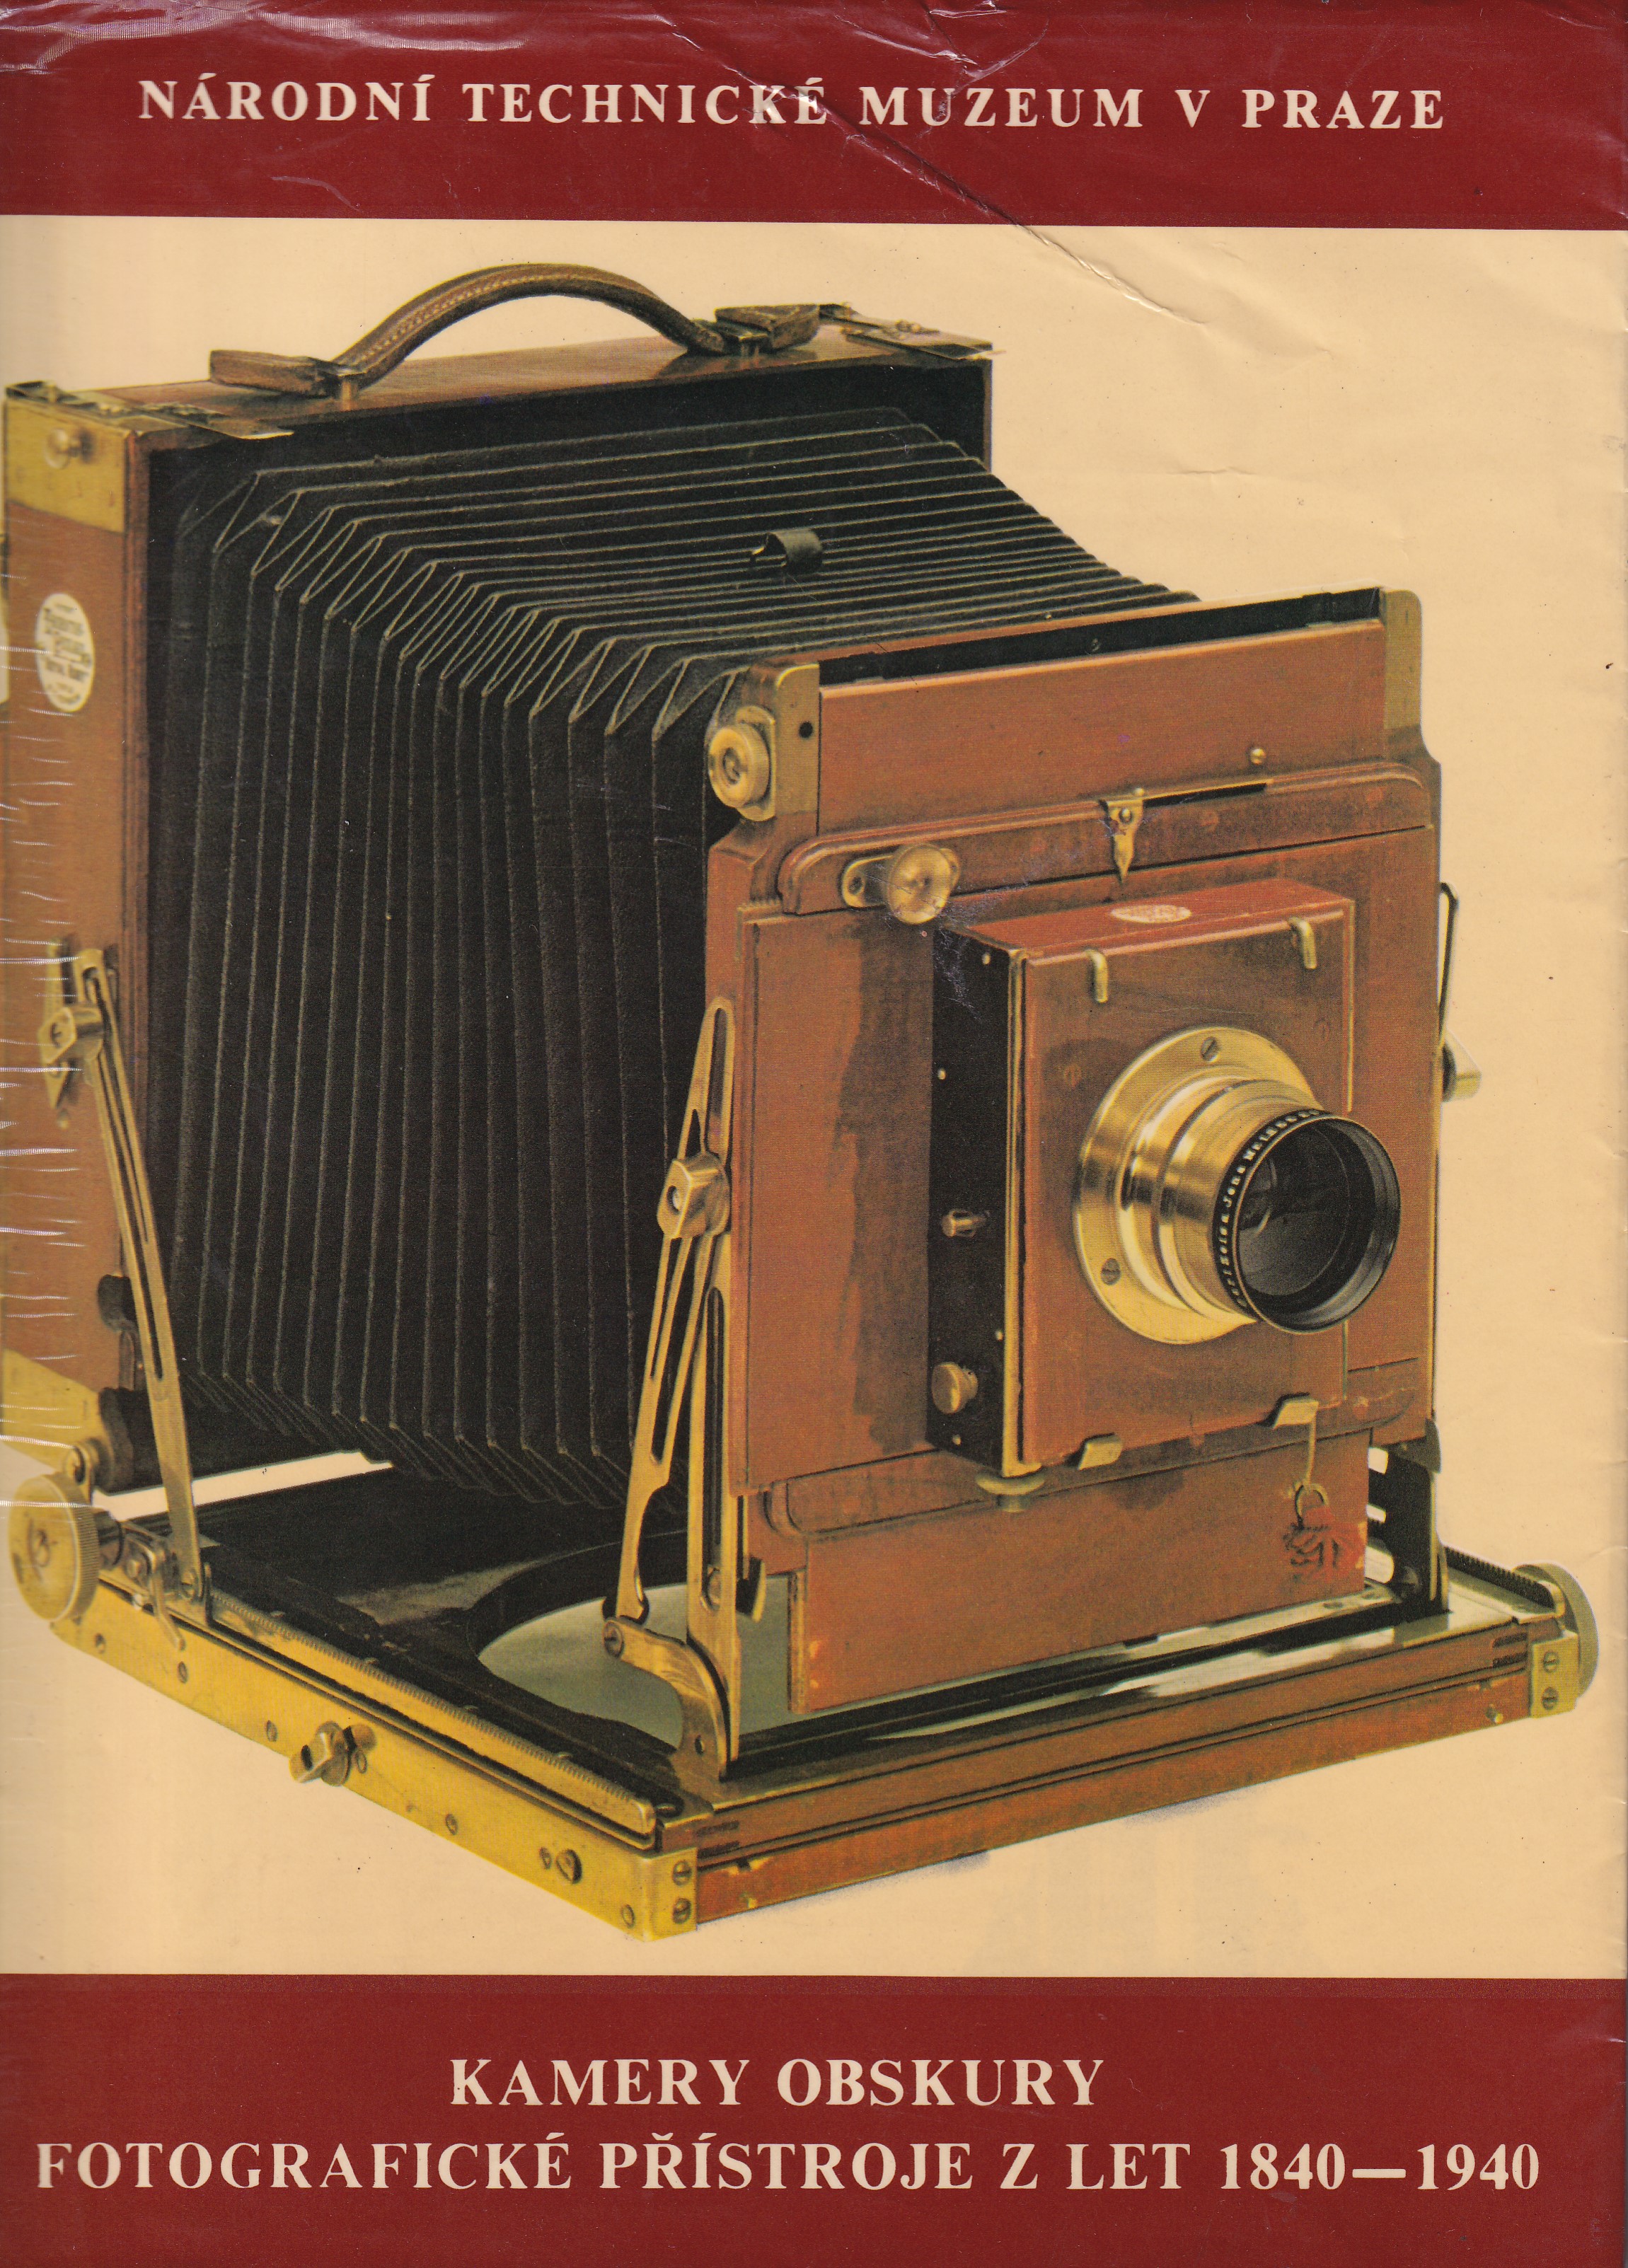 Kamery obskury, fotografické přístroje z let 1840-1940, Praha 1982, Národní technické muzeum - katalog kolekce fotoaparátu